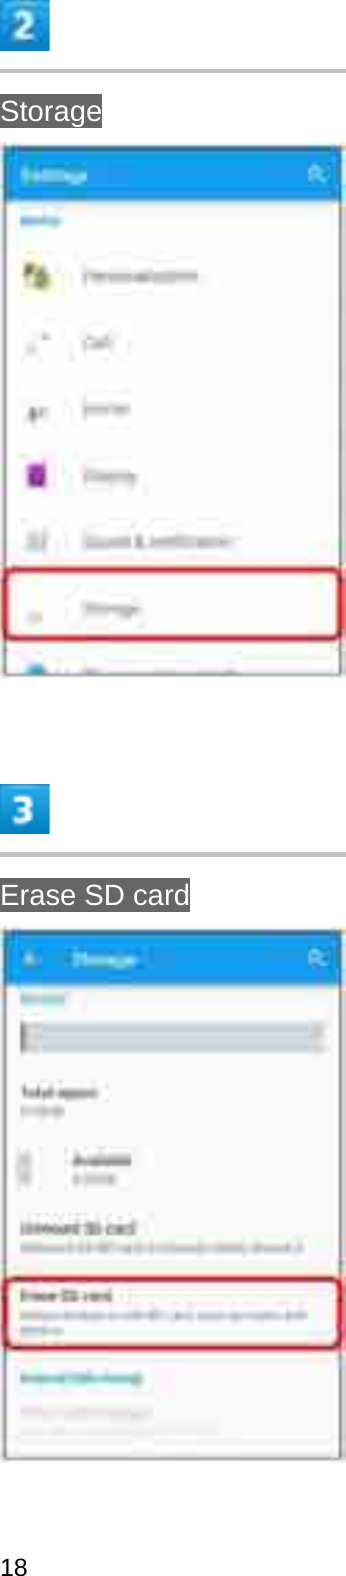 StorageErase SD card18